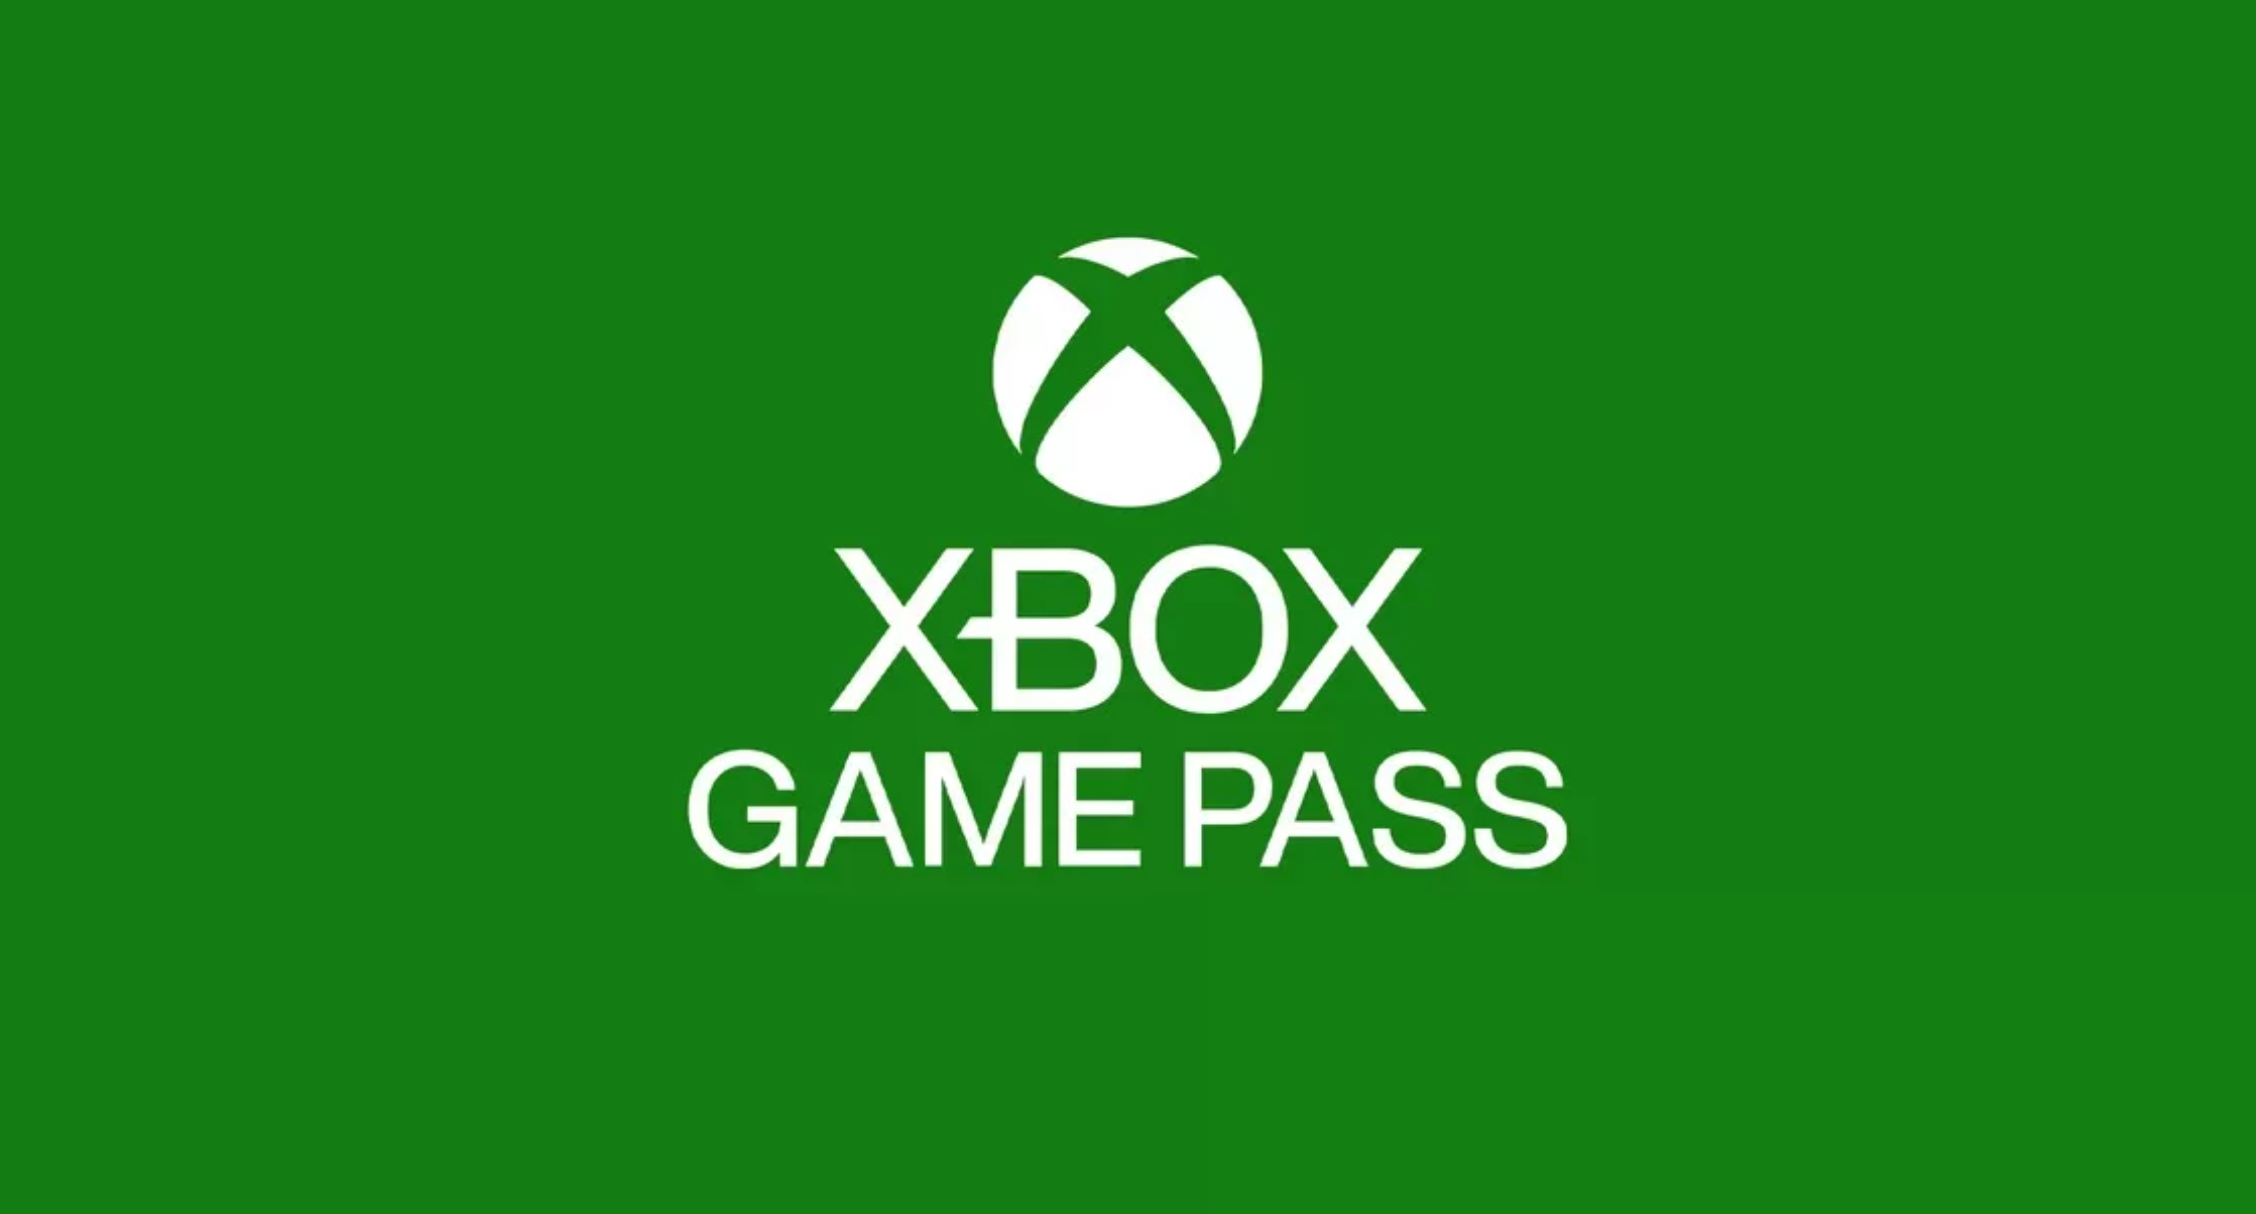 Xbox Game Pass : Codes promo, bons plans... Comment jouer pas cher ?